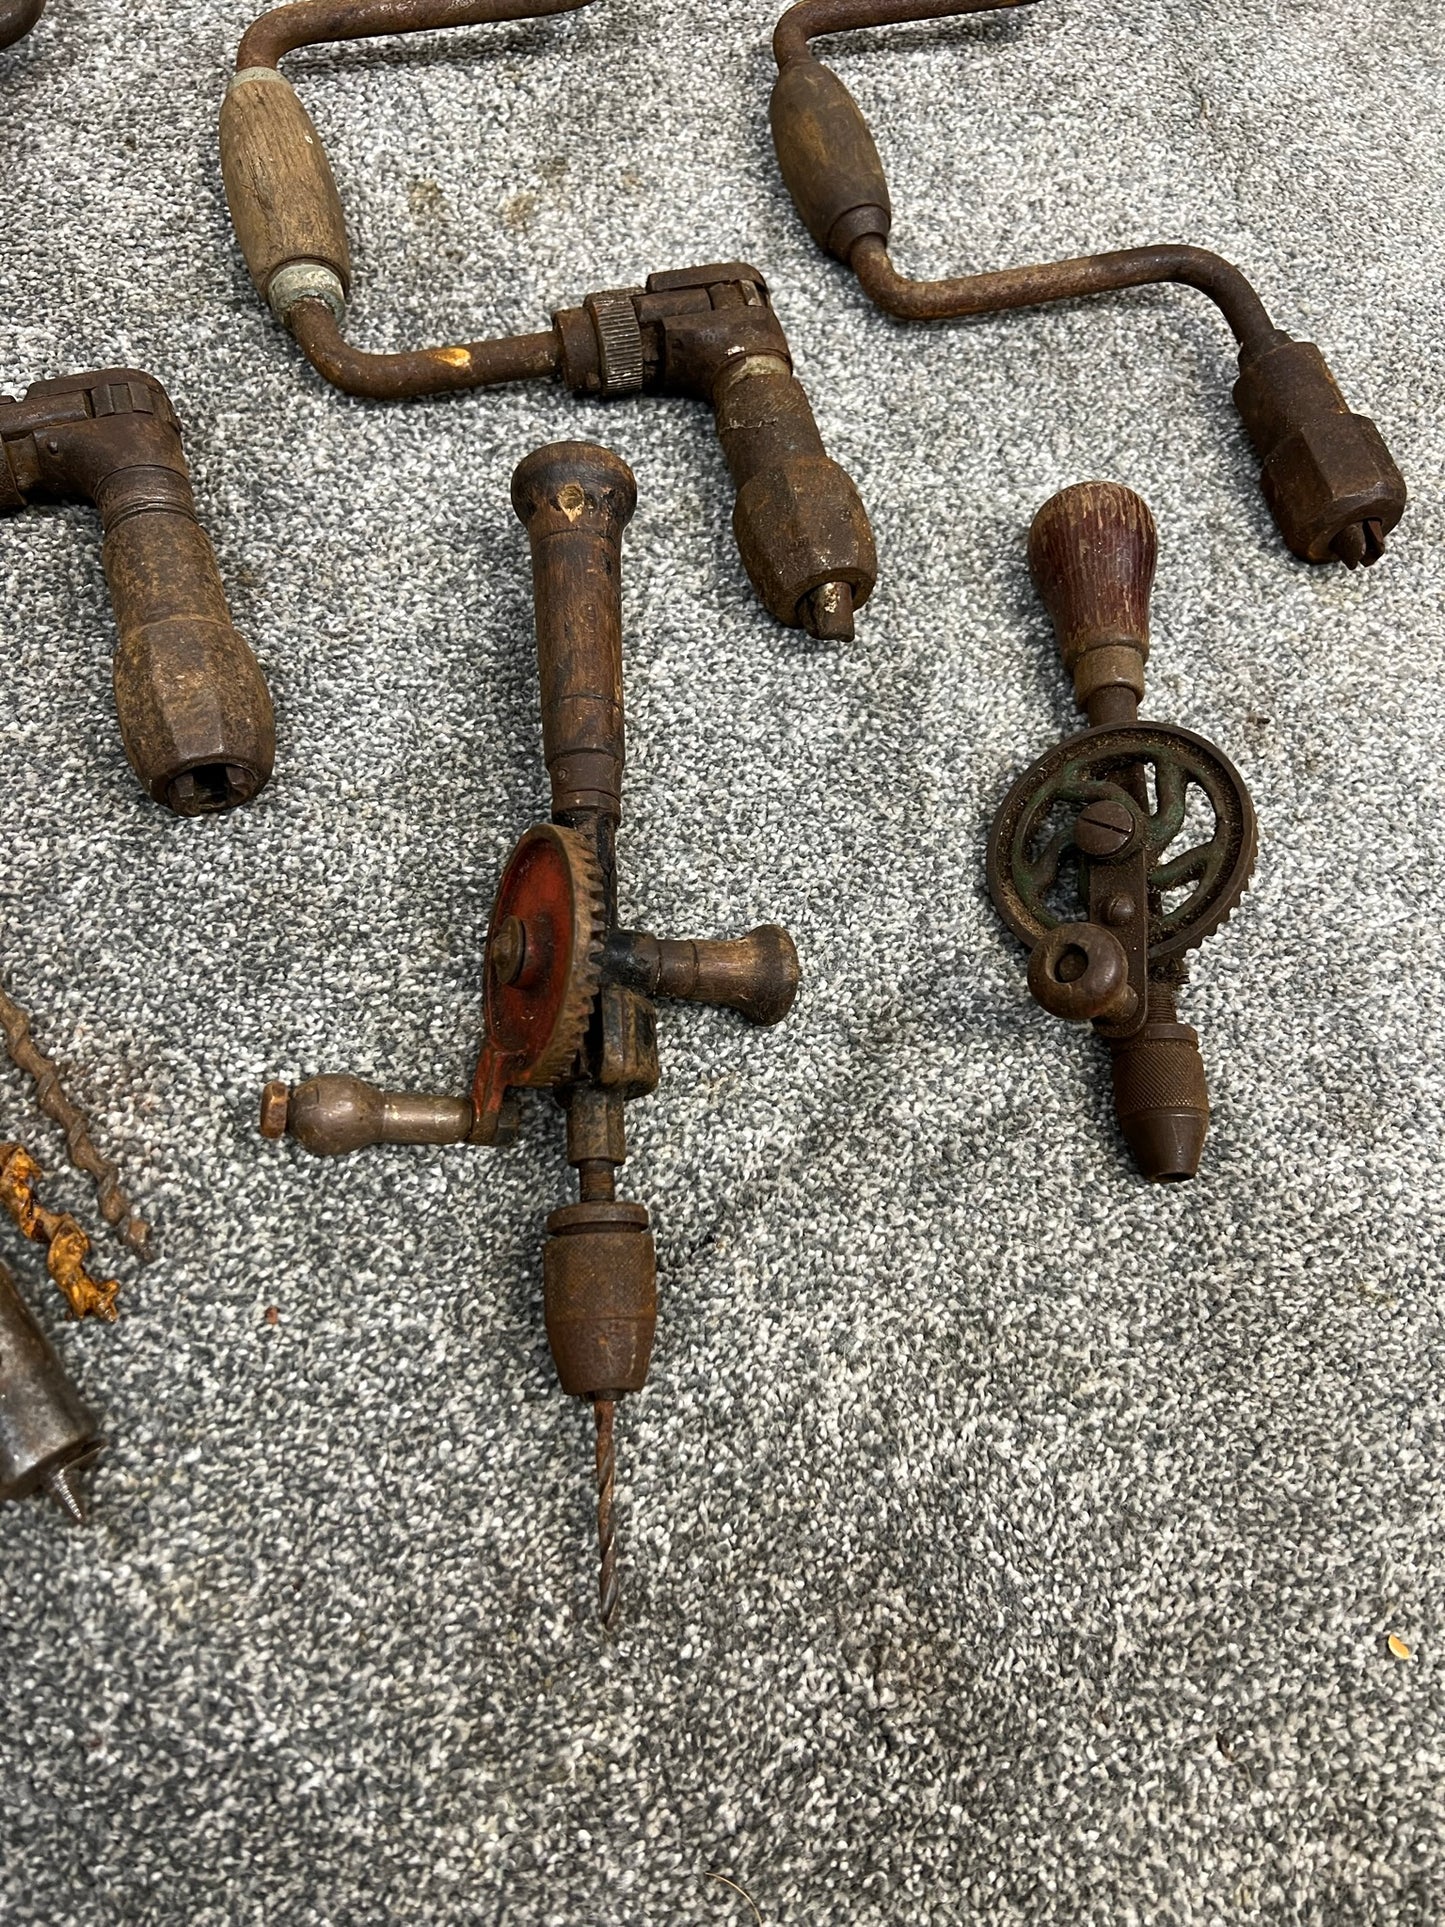 Vintage Drill Job Lot Brace Drill Hand Drill Old Tools Rustic Patina